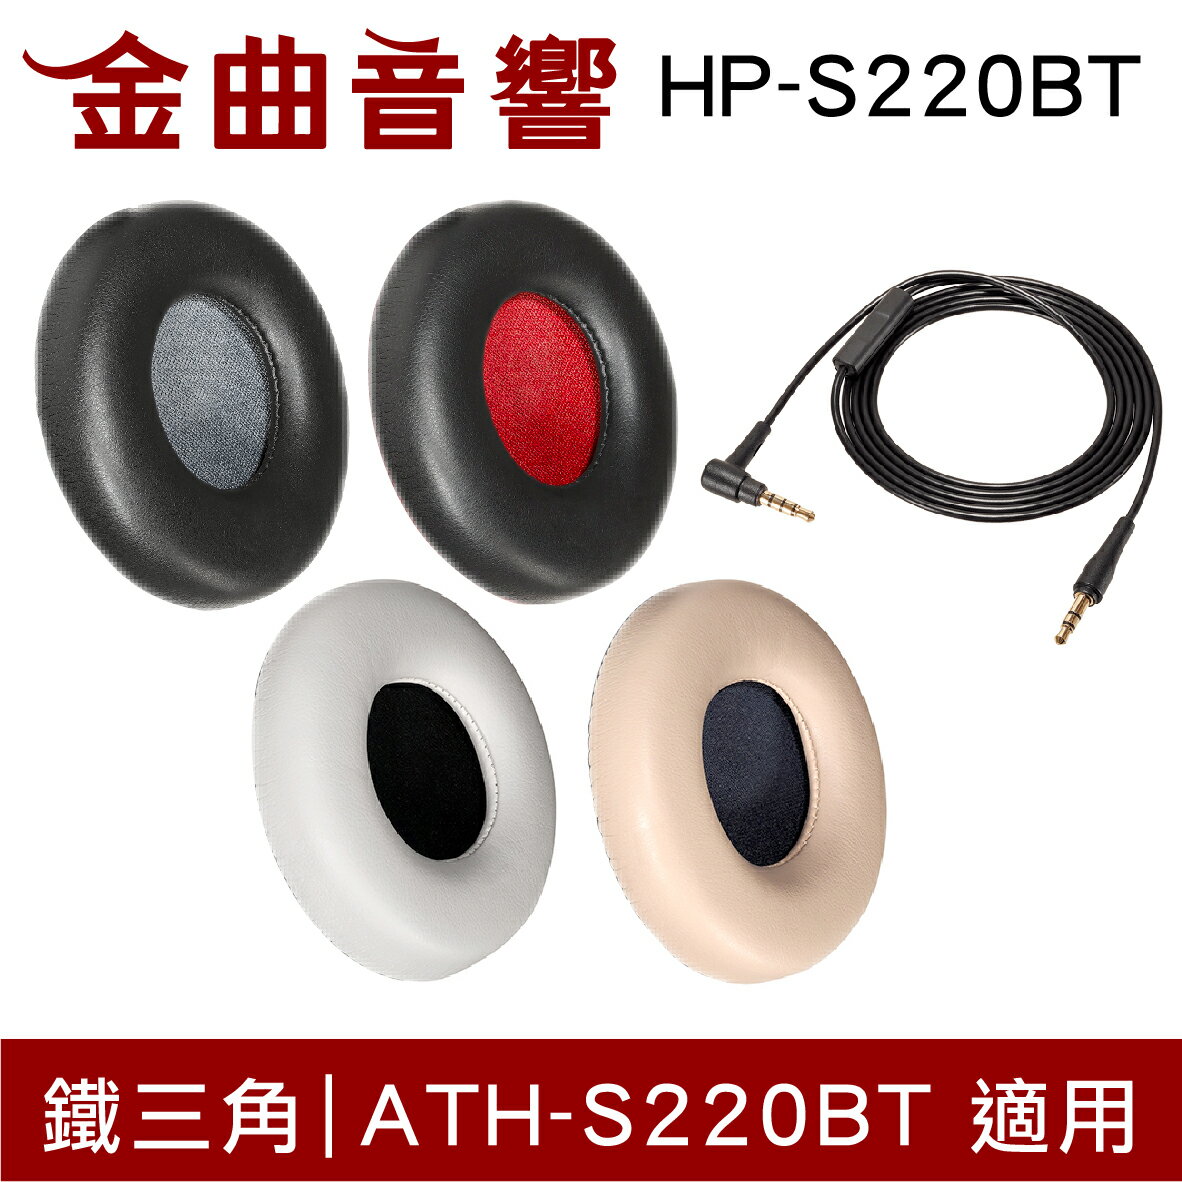 鐵三角 HP-S220BT 替換耳罩 一對 ATH-S220BT 替換線 | 金曲音響